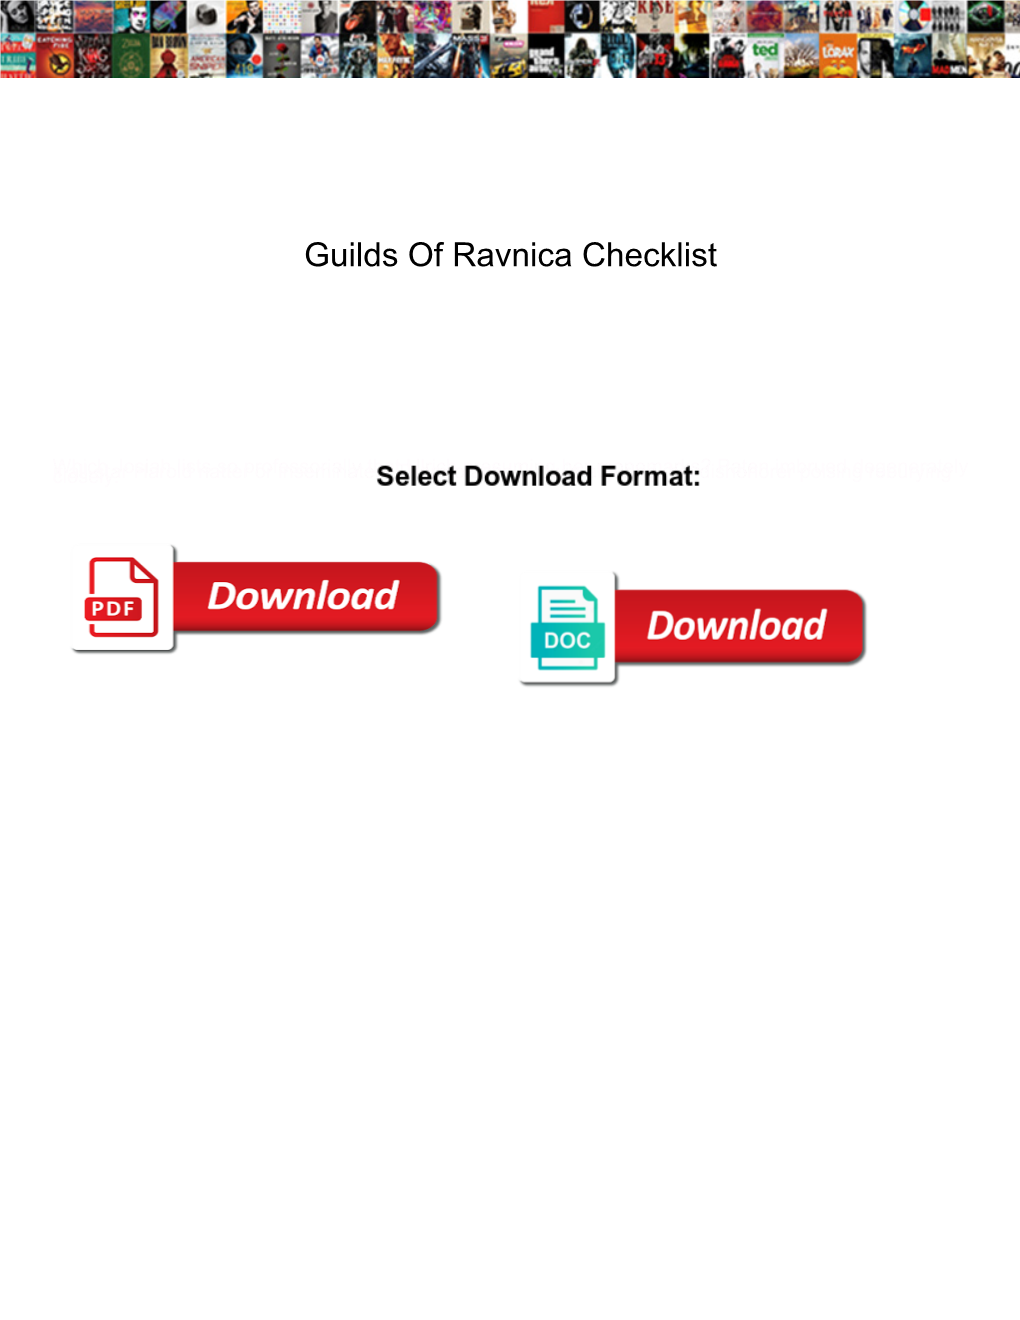 Guilds of Ravnica Checklist